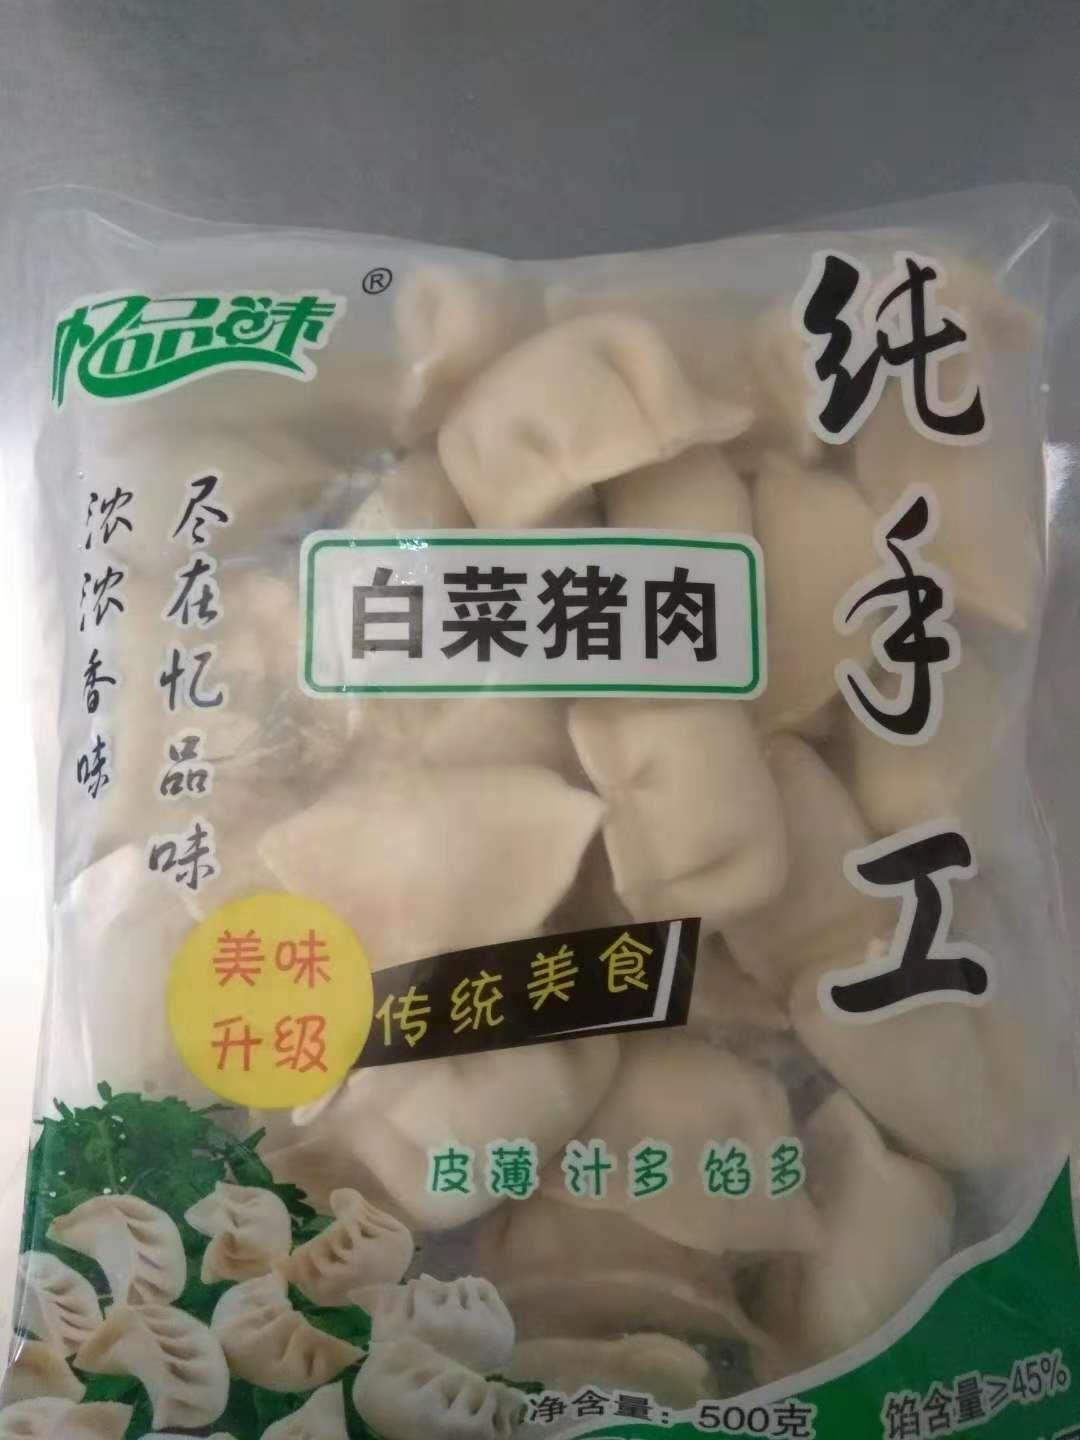 吉林纯手工水饺经销商 泗阳县忆品味食品有限公司